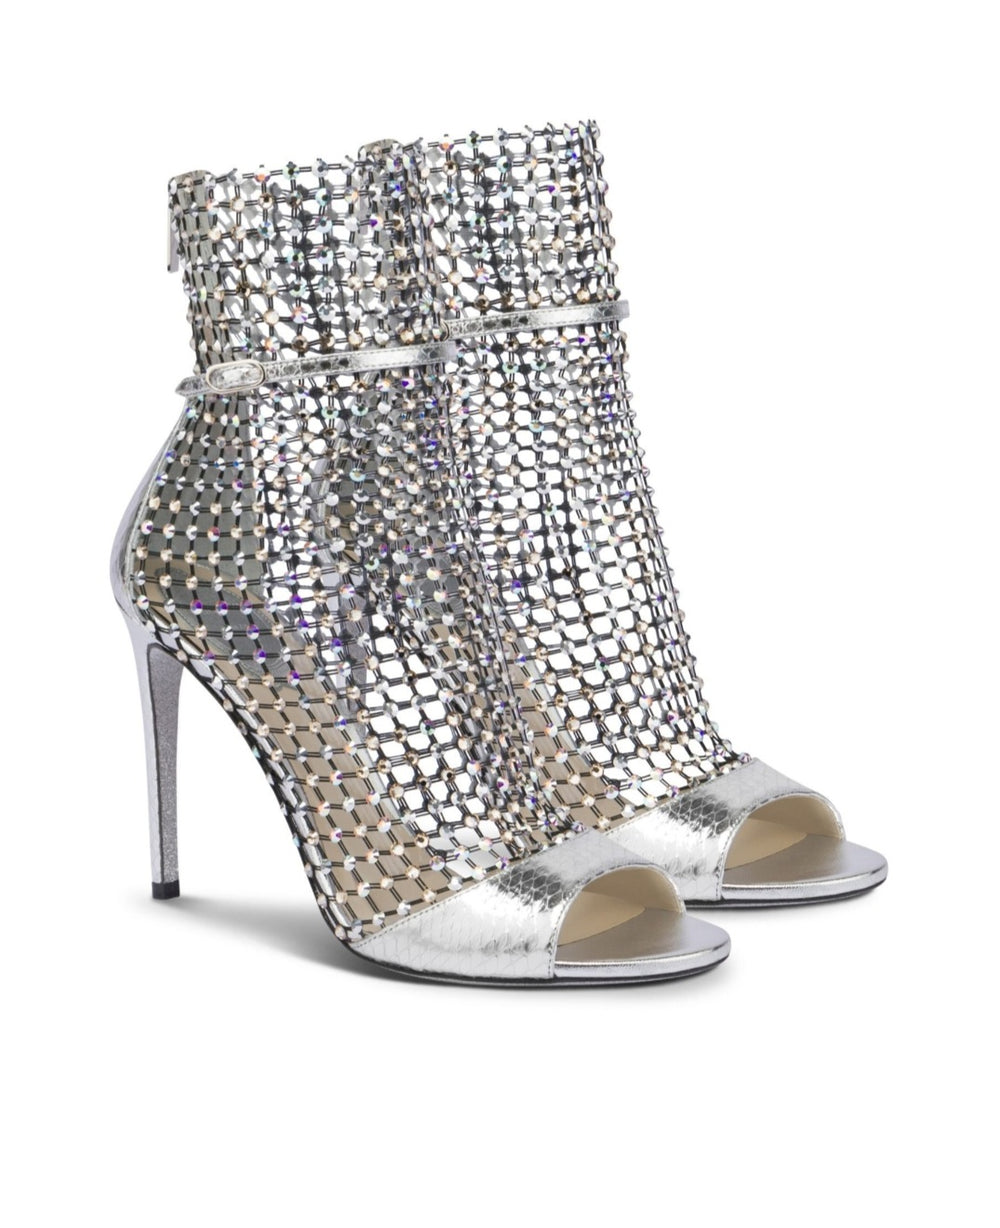 Galaxia Silver Stiletto Sandals - Rene Caovilla - Liberty Shoes Australia